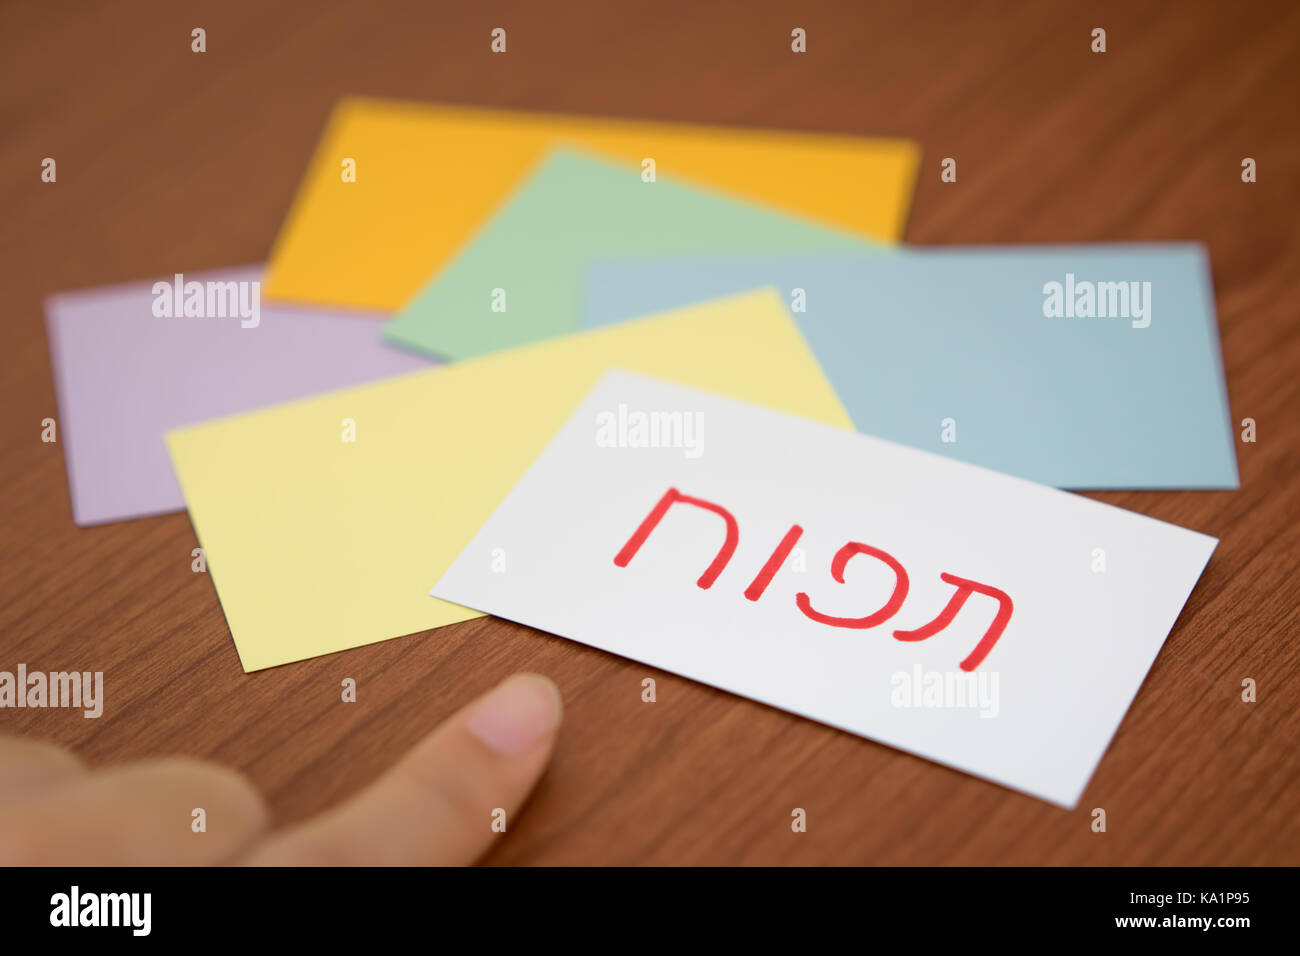 Hebräisch; Lernen, neue Sprache mit der Flaish Card (Übersetzung; Apple) Stockfoto